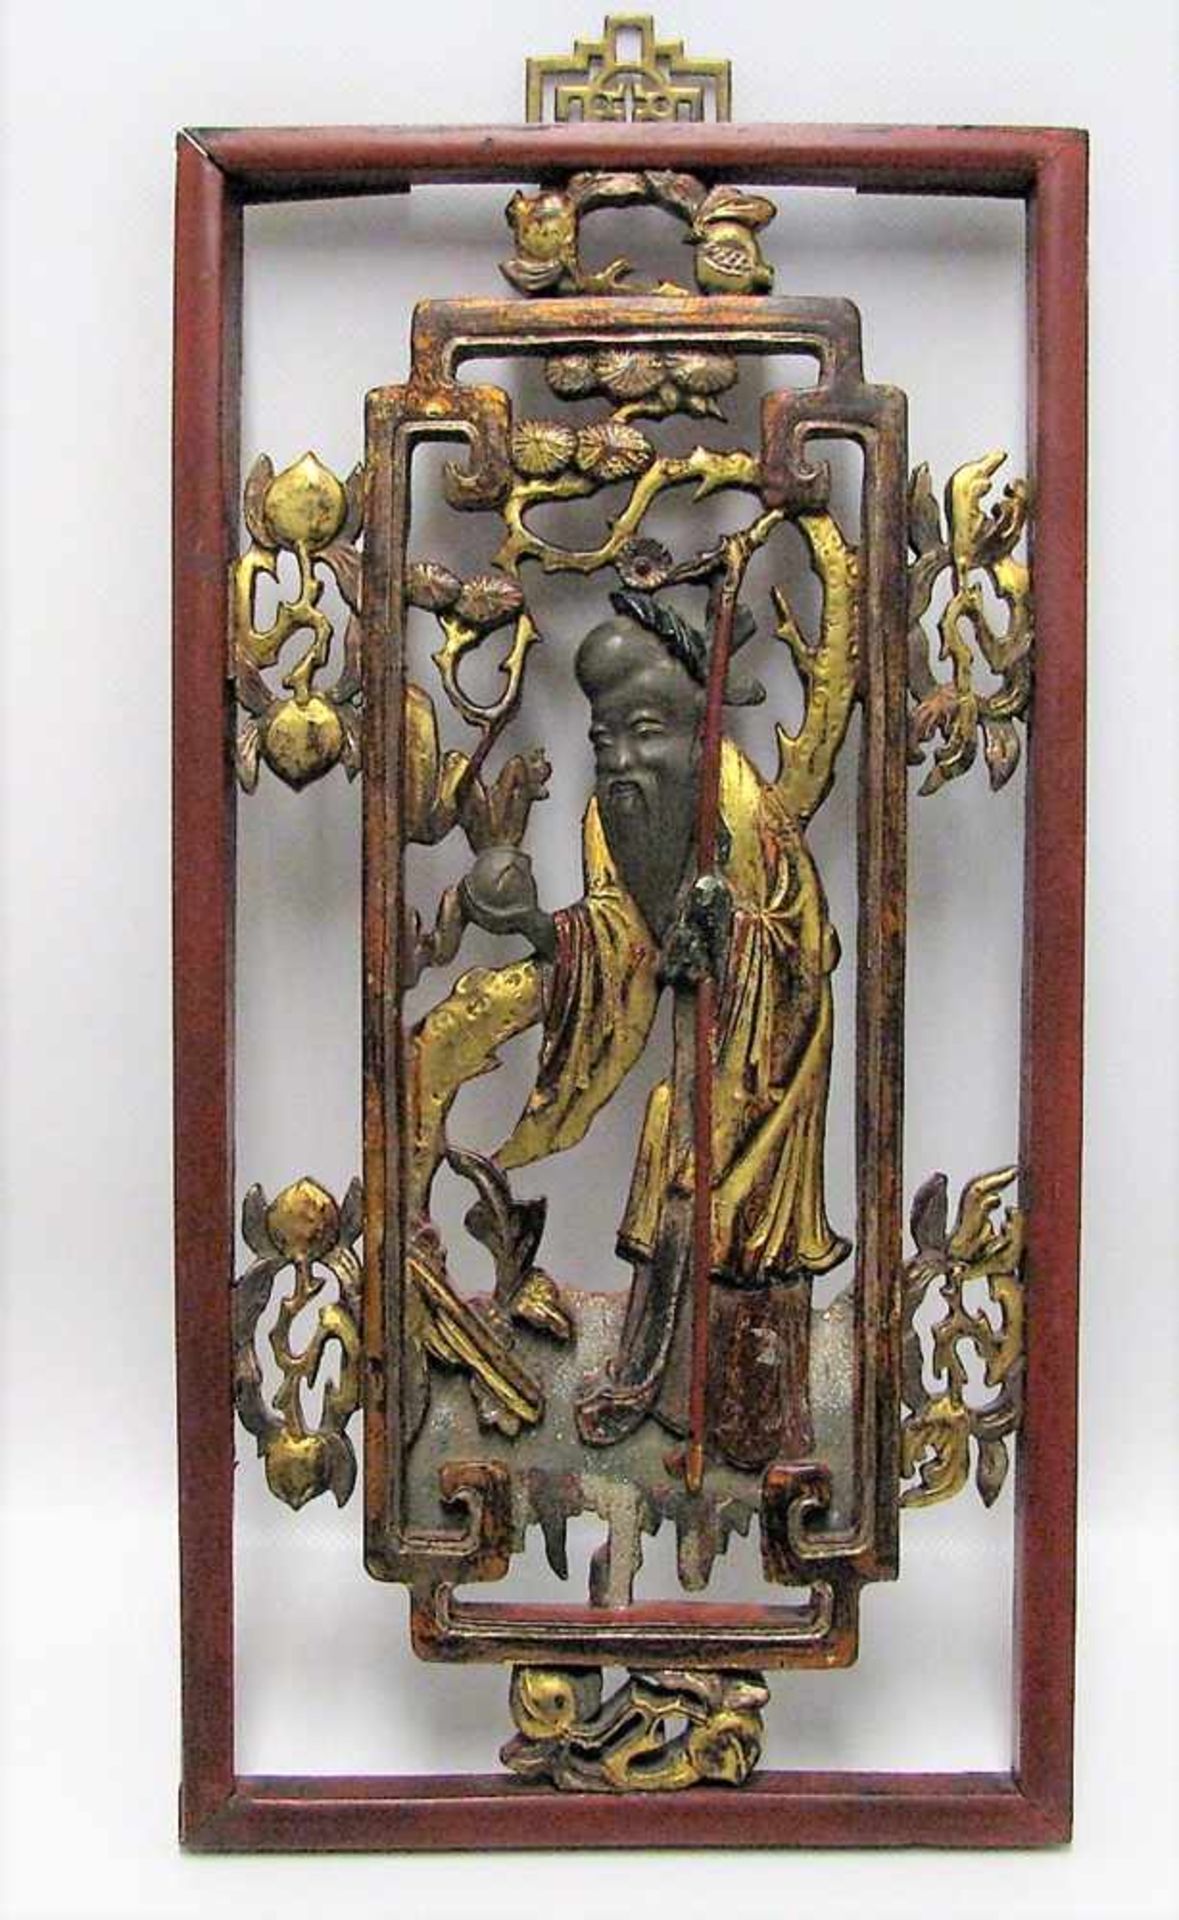 Schnitzerei, China, 19. Jahrhundert, "Weiser mit Stock", Edelholz beschnitzt, bemalt und